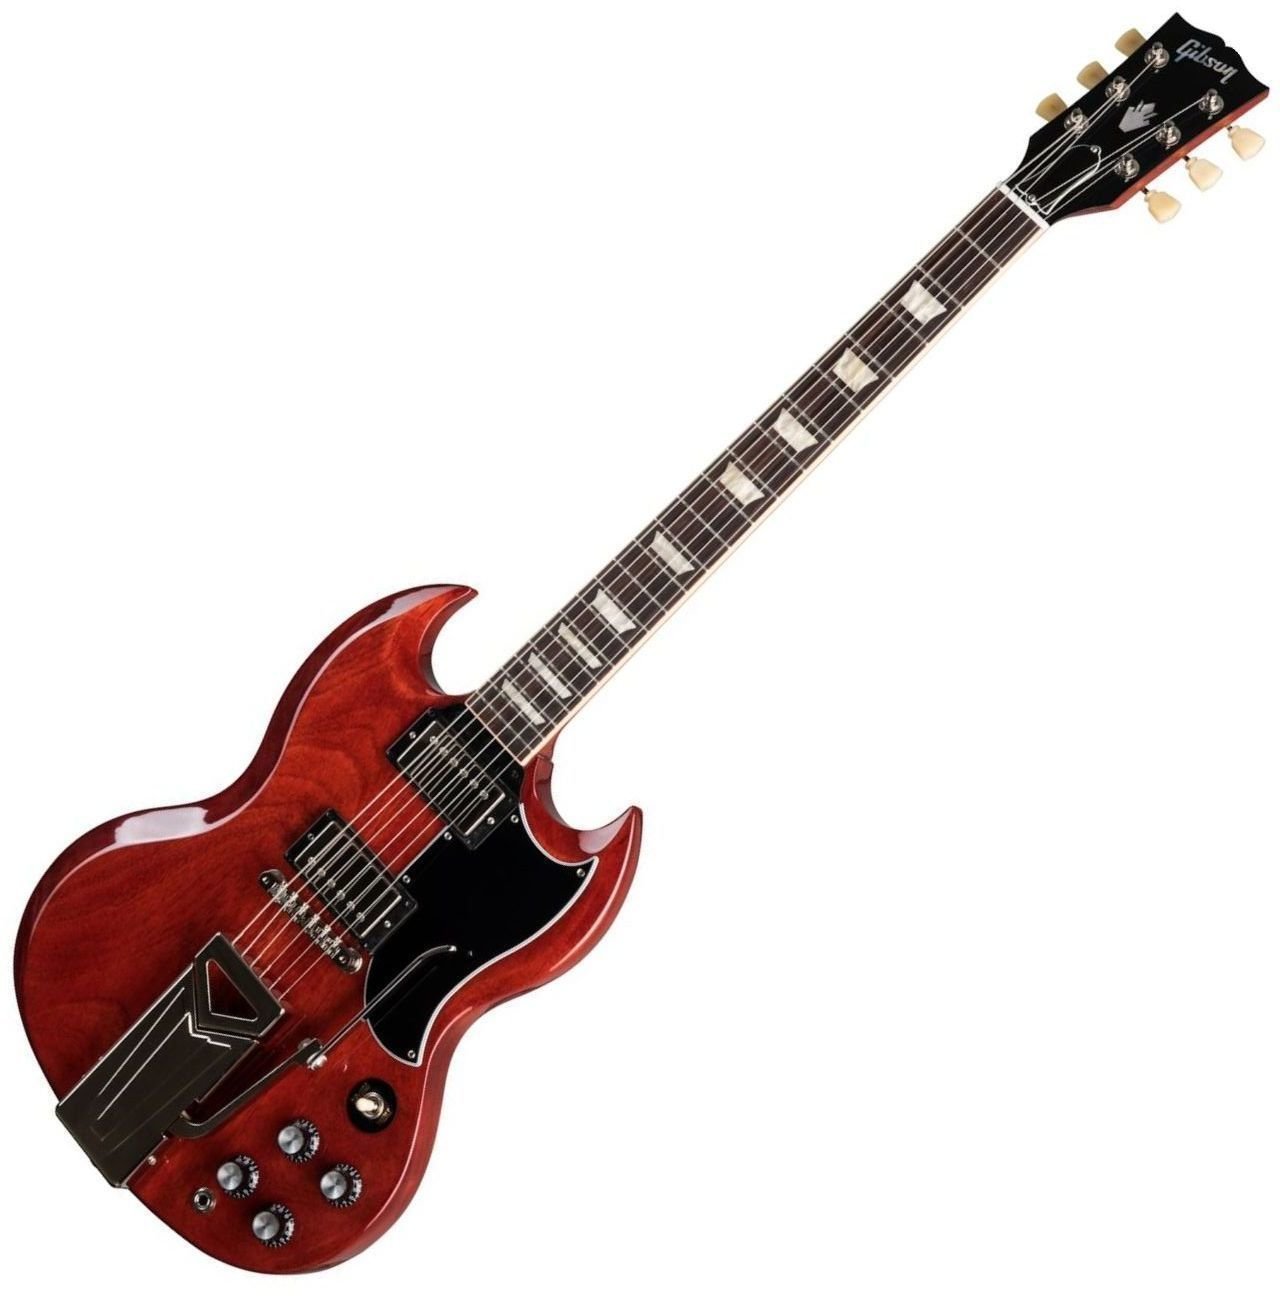 Ηλεκτρική Κιθάρα Gibson SG Standard 61 Sideways Vibrola Vintage Cherry